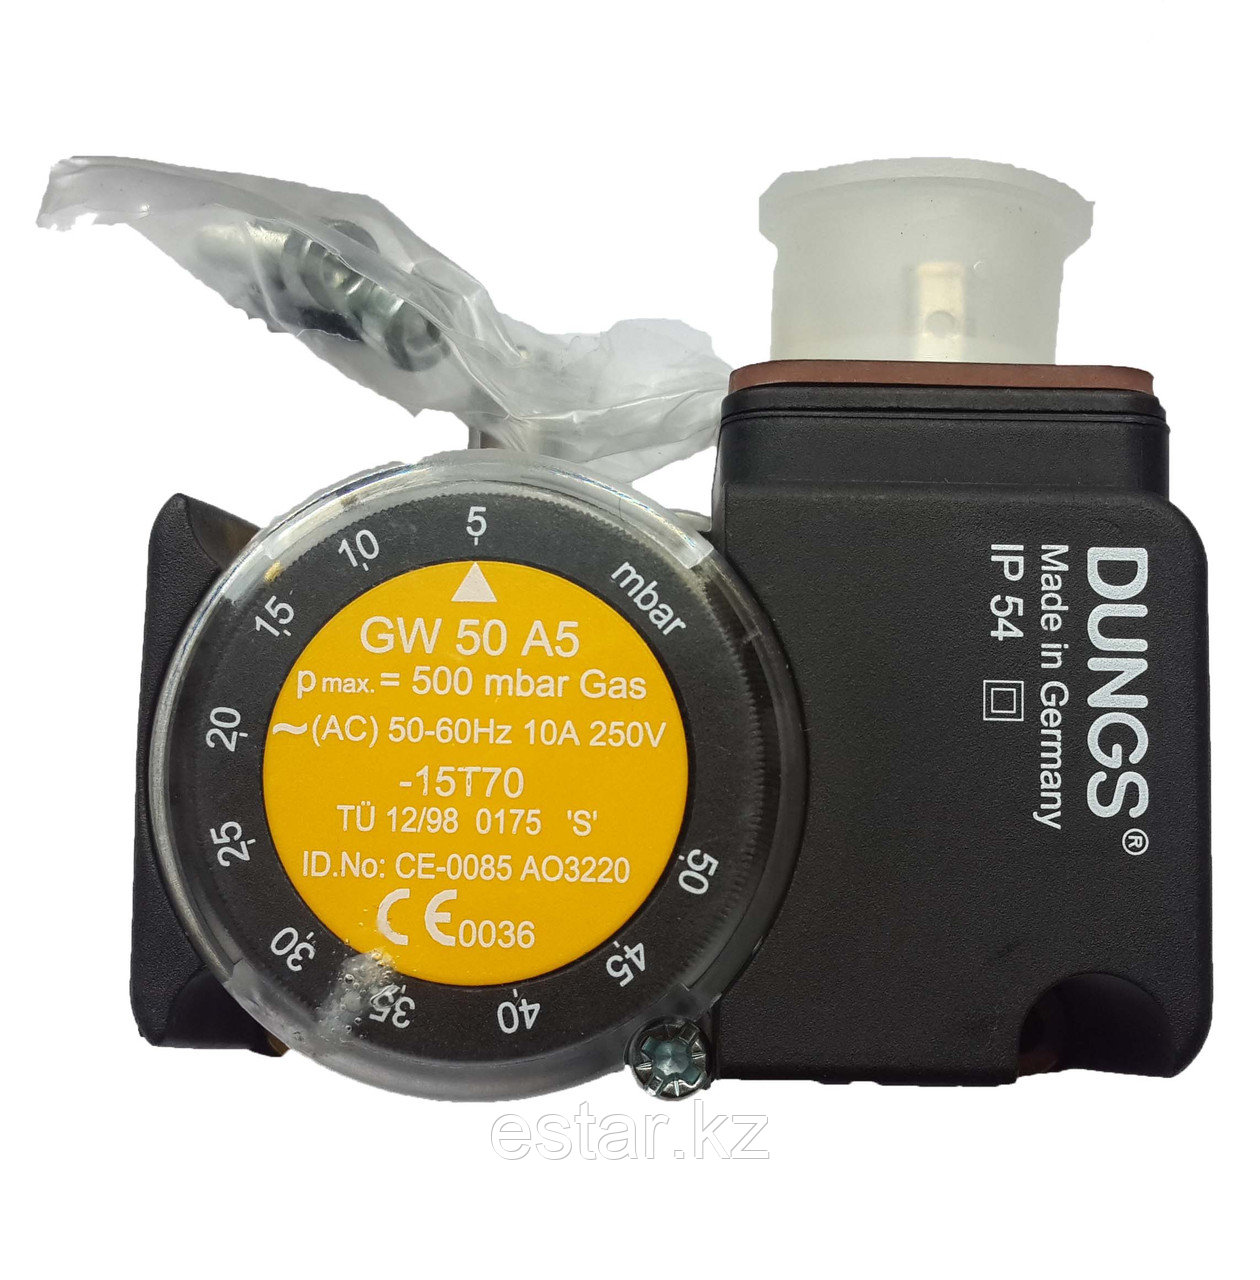 Датчики-реле для контроля избыточного давления газа DUNGS GW 50 A5